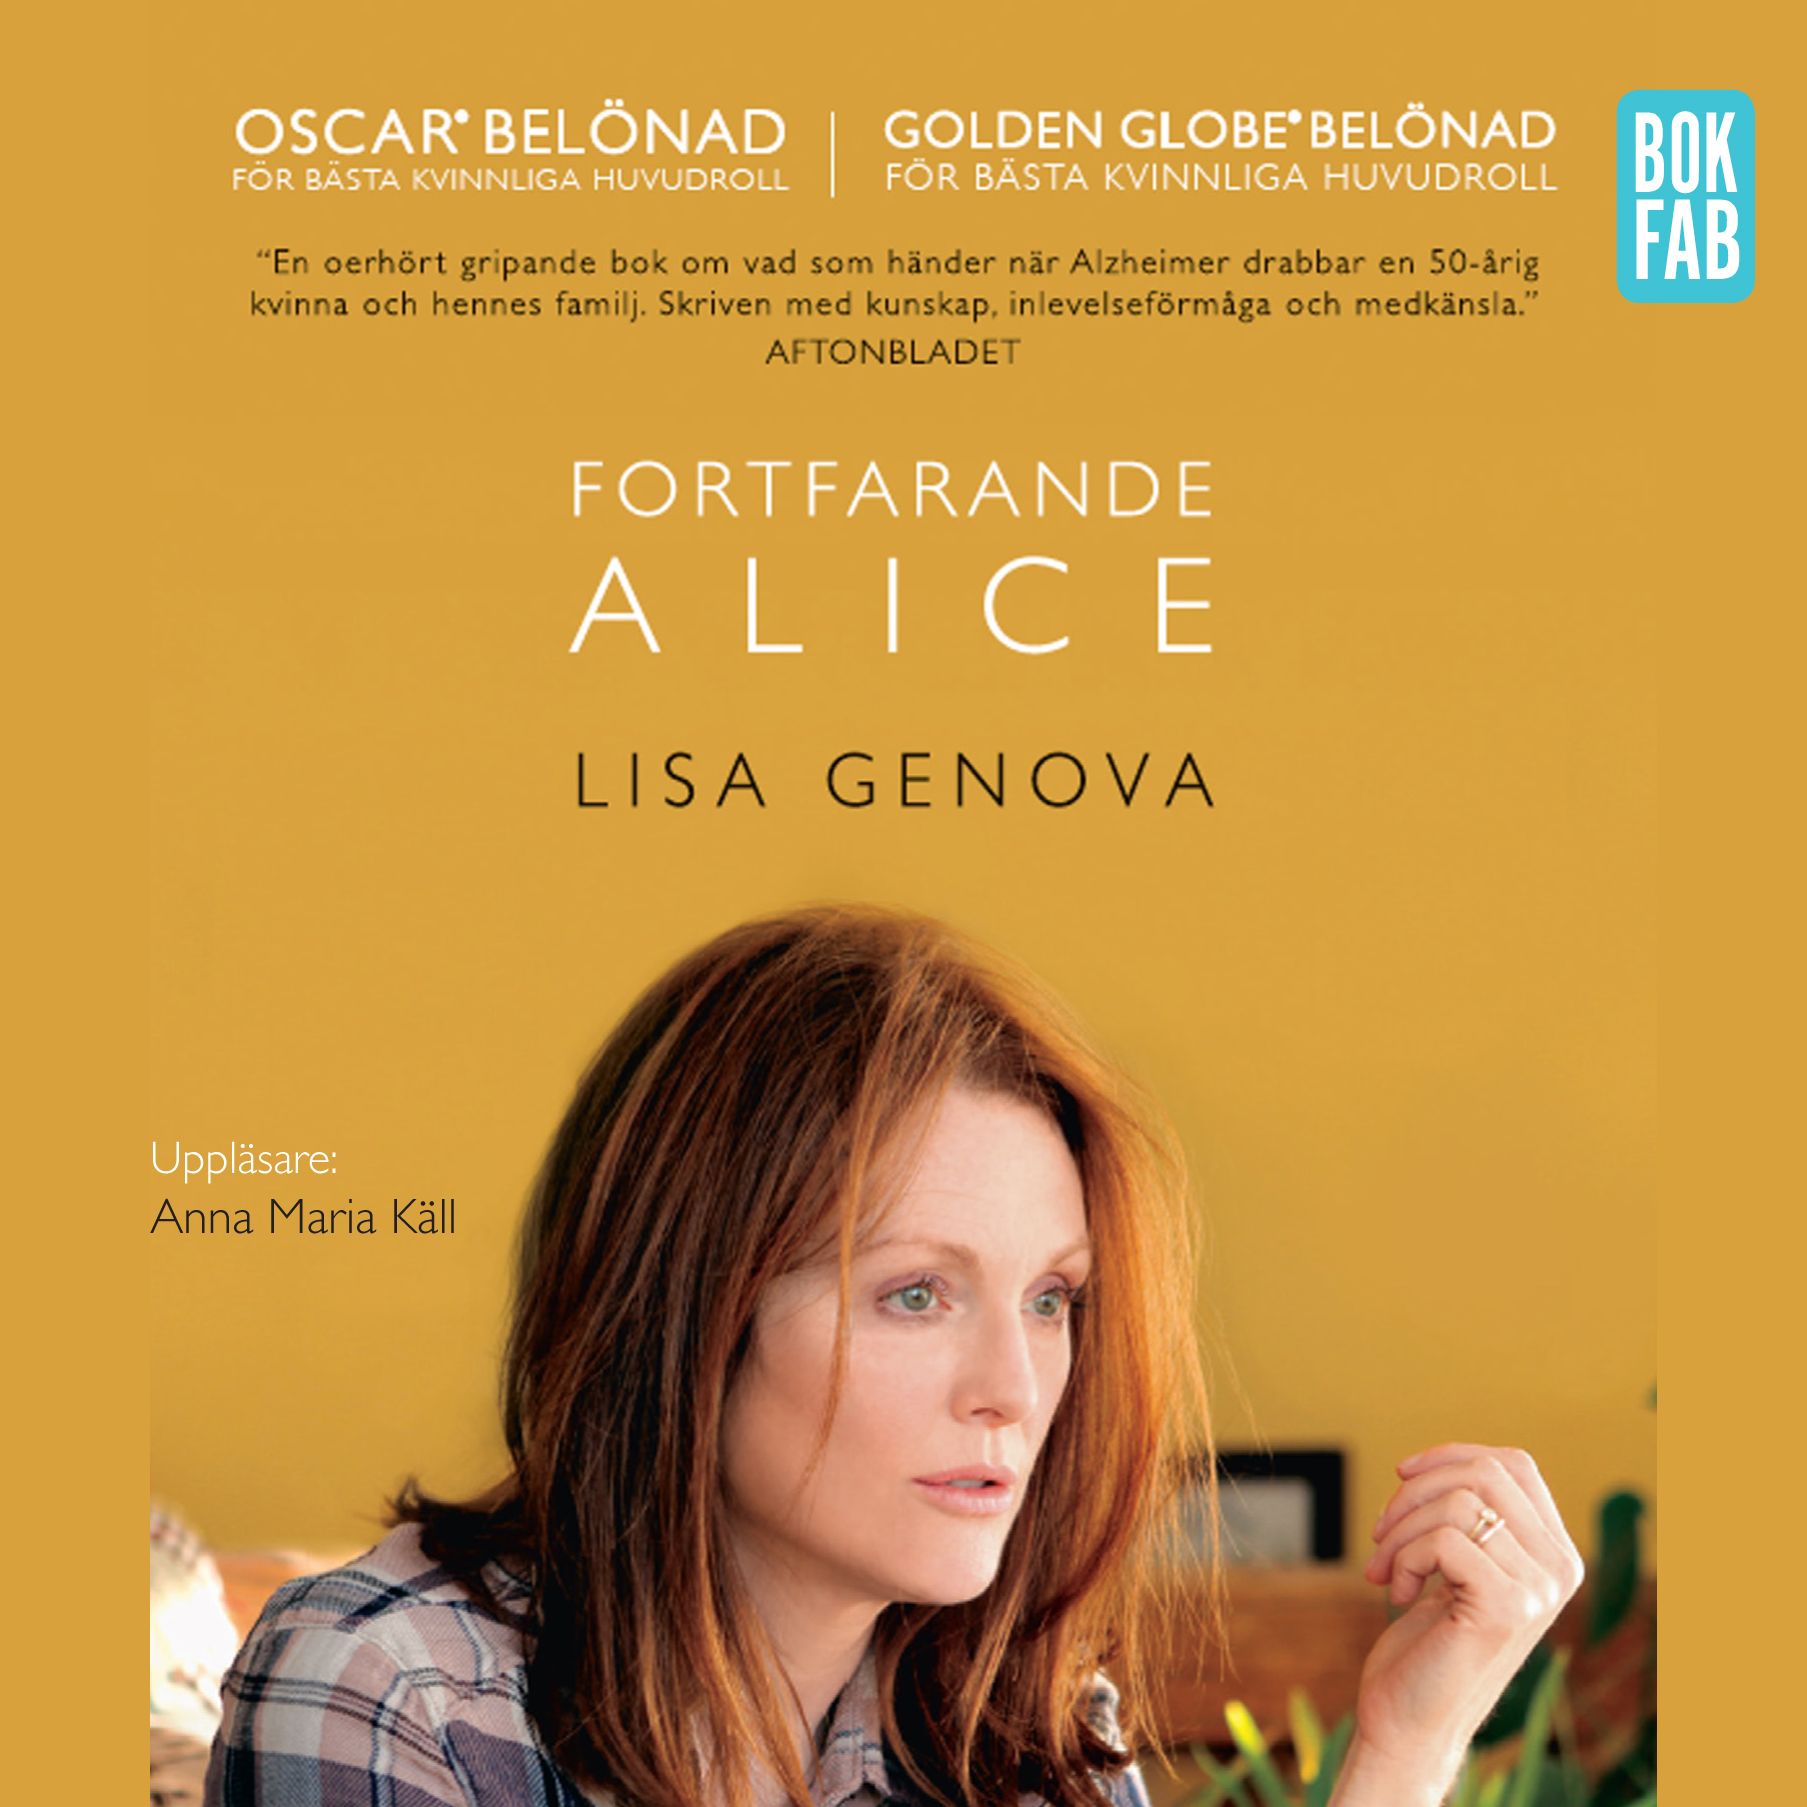 Fortfarande Alice, audiobook by Lisa Genova